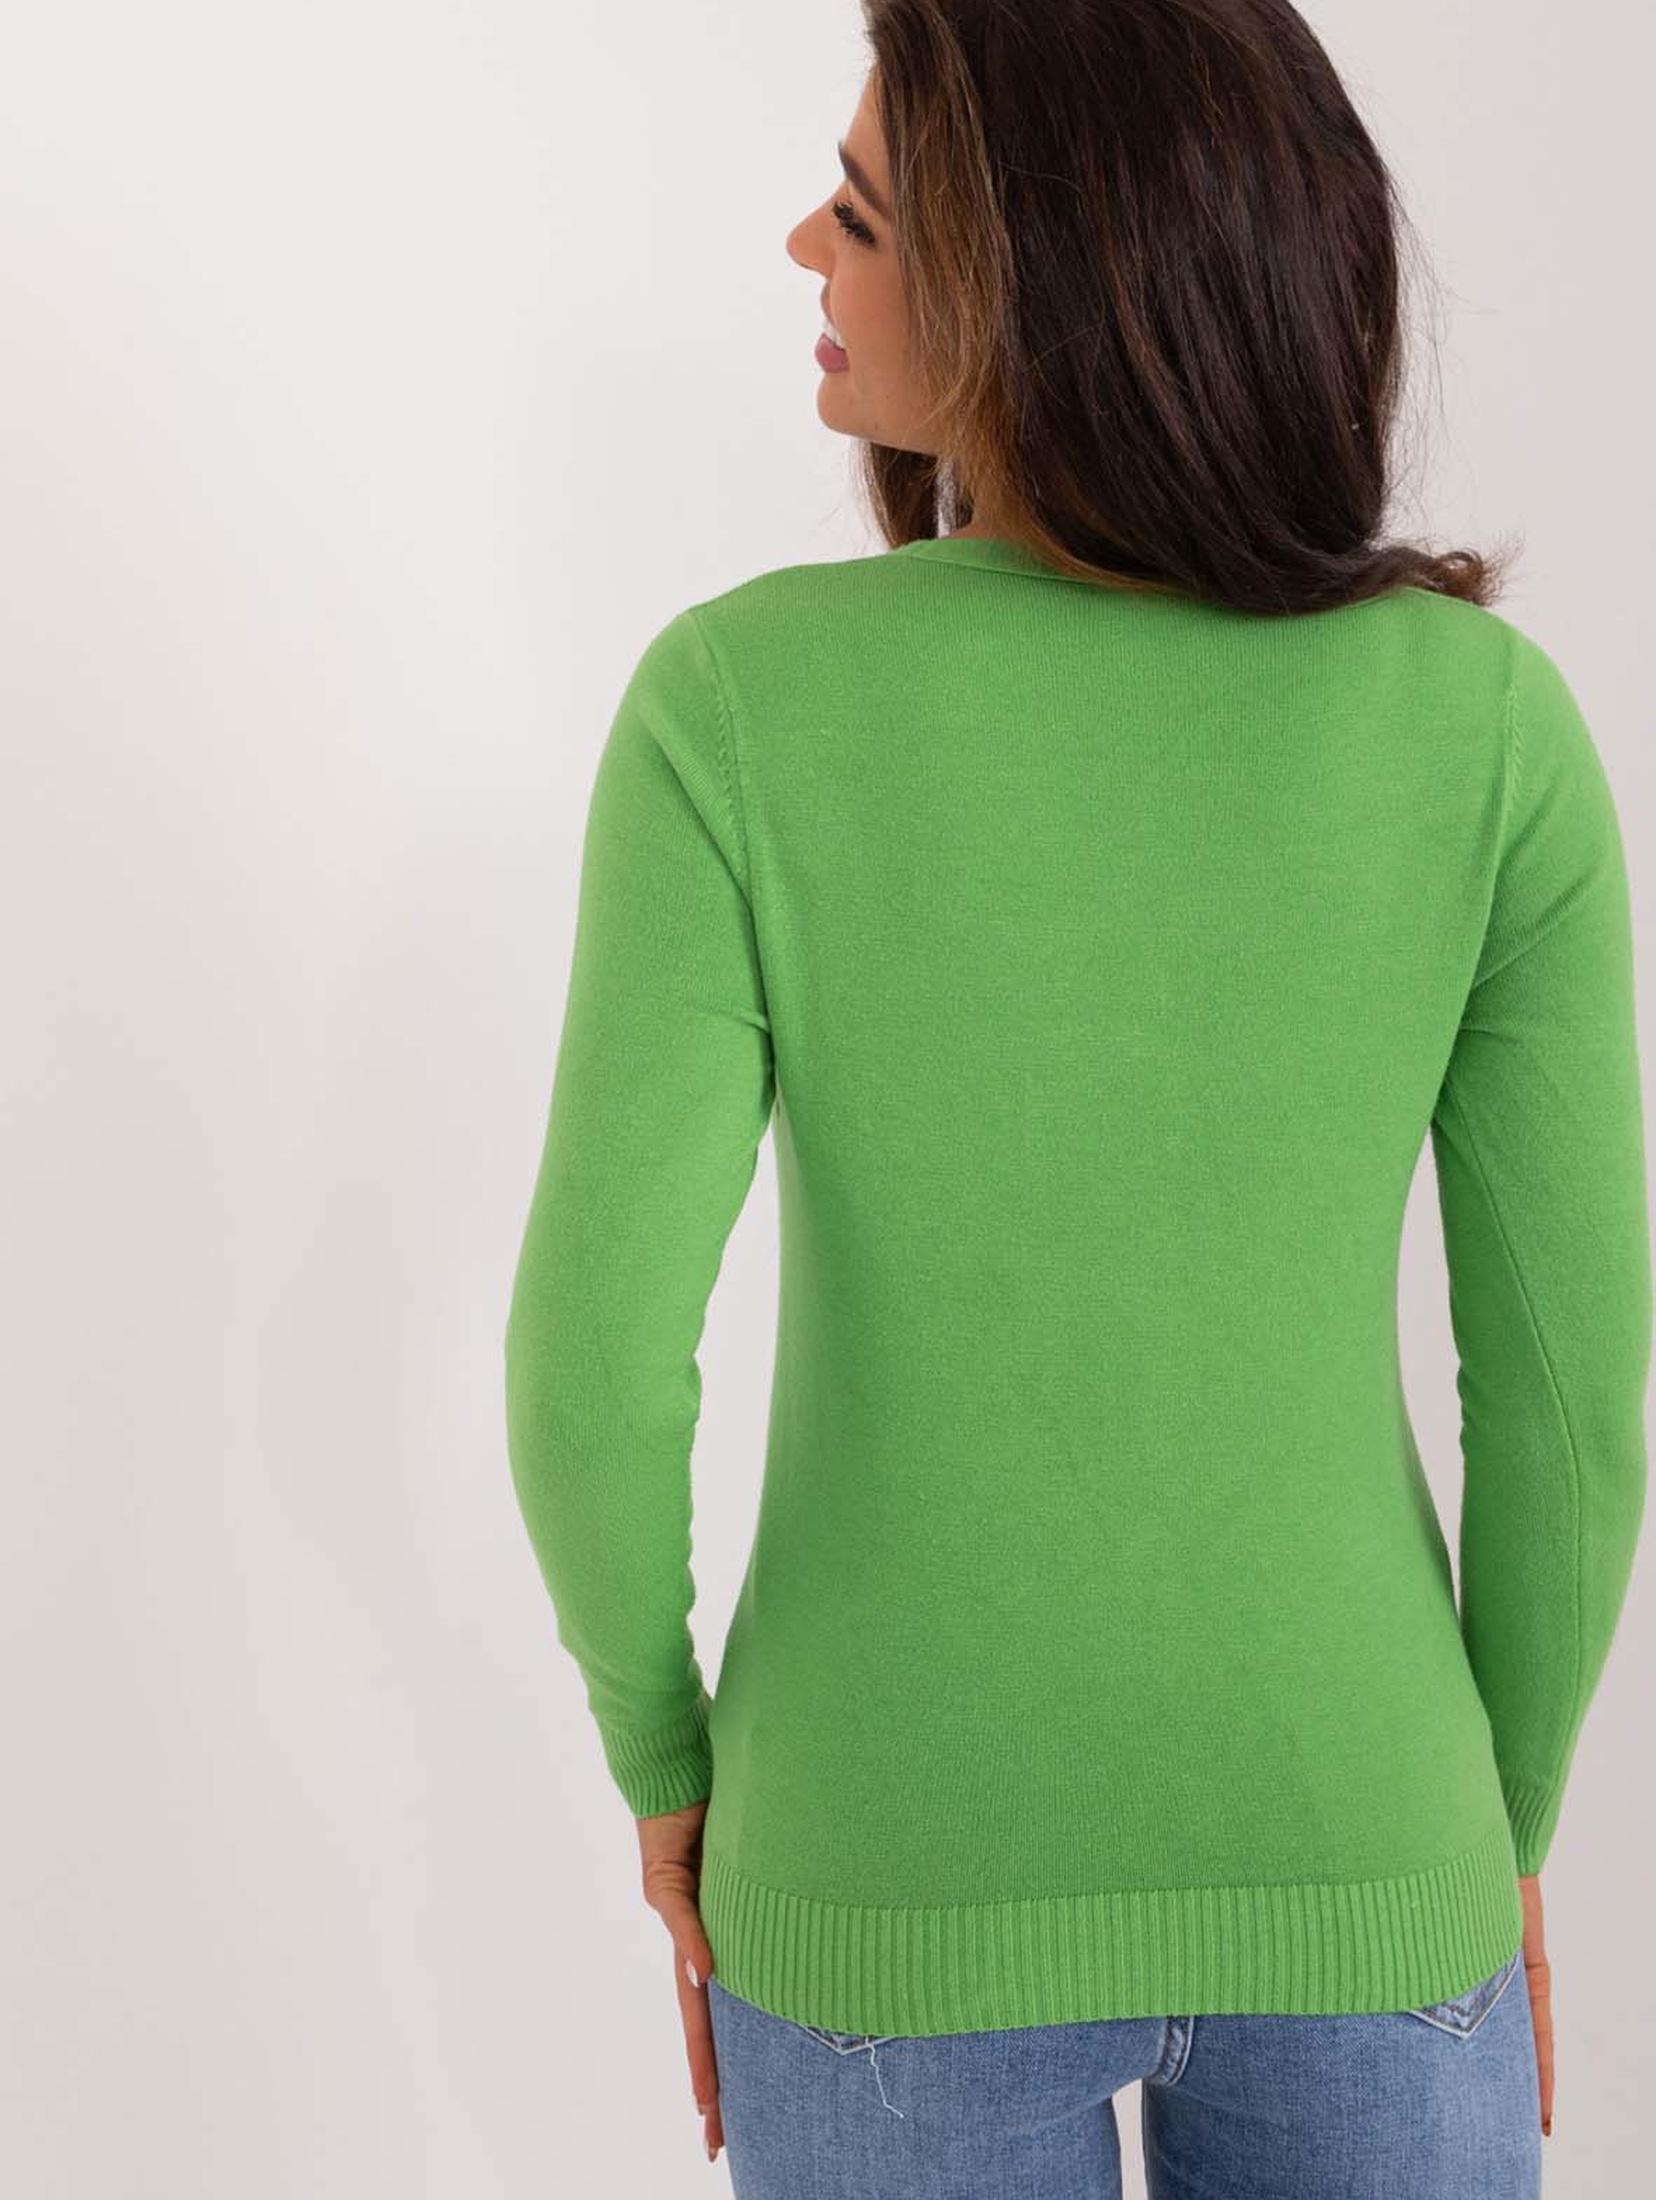 Zielony rozpinany sweter damski z dekoltem w serek